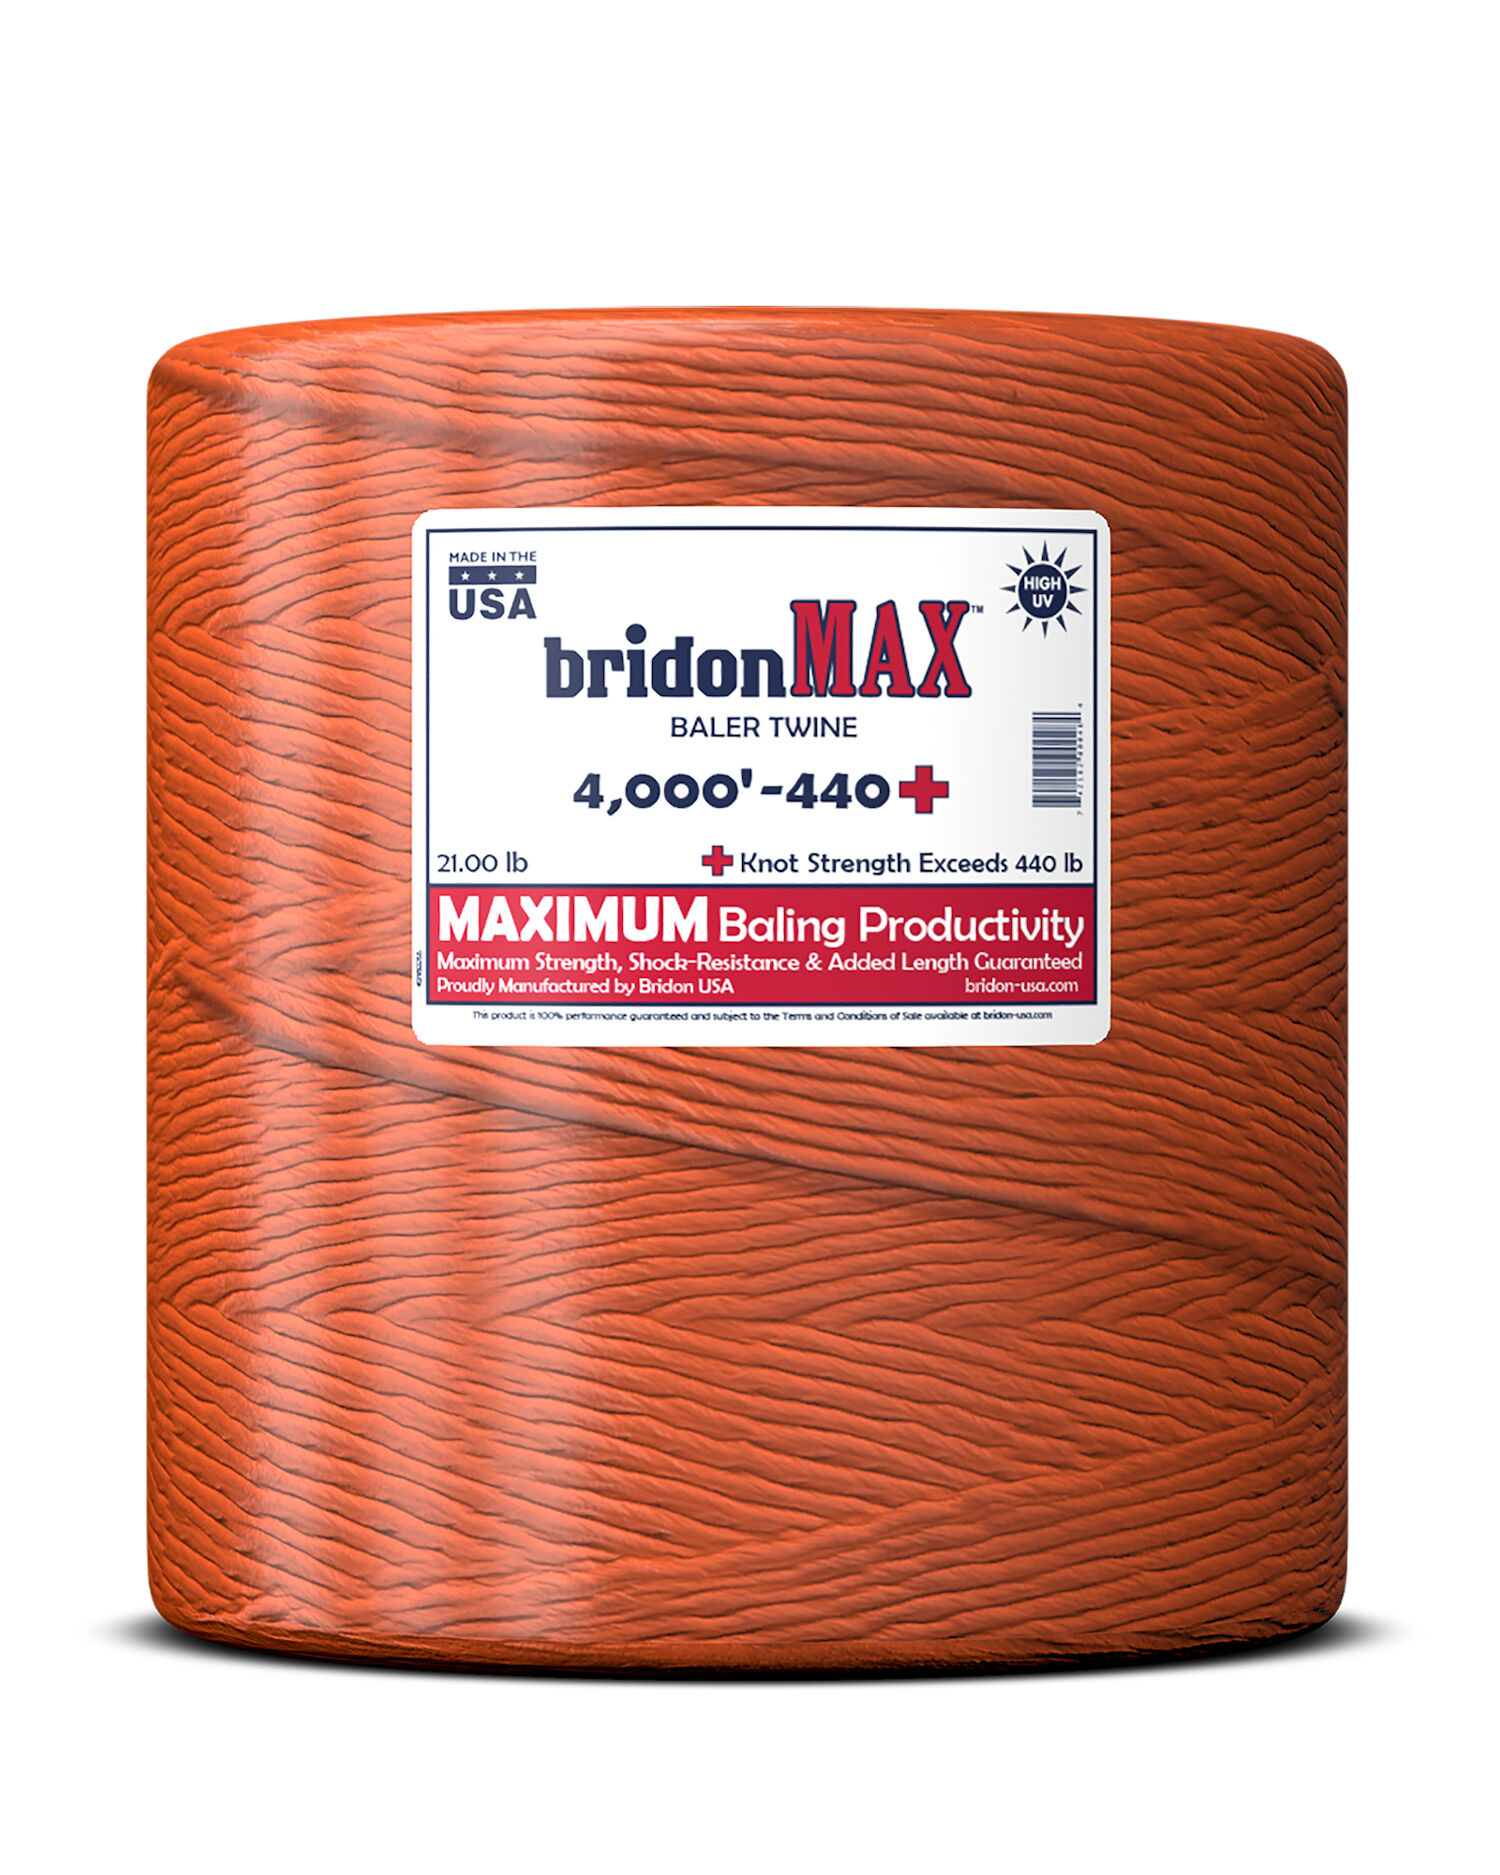 Bridon-MAX-4000-440.jpg